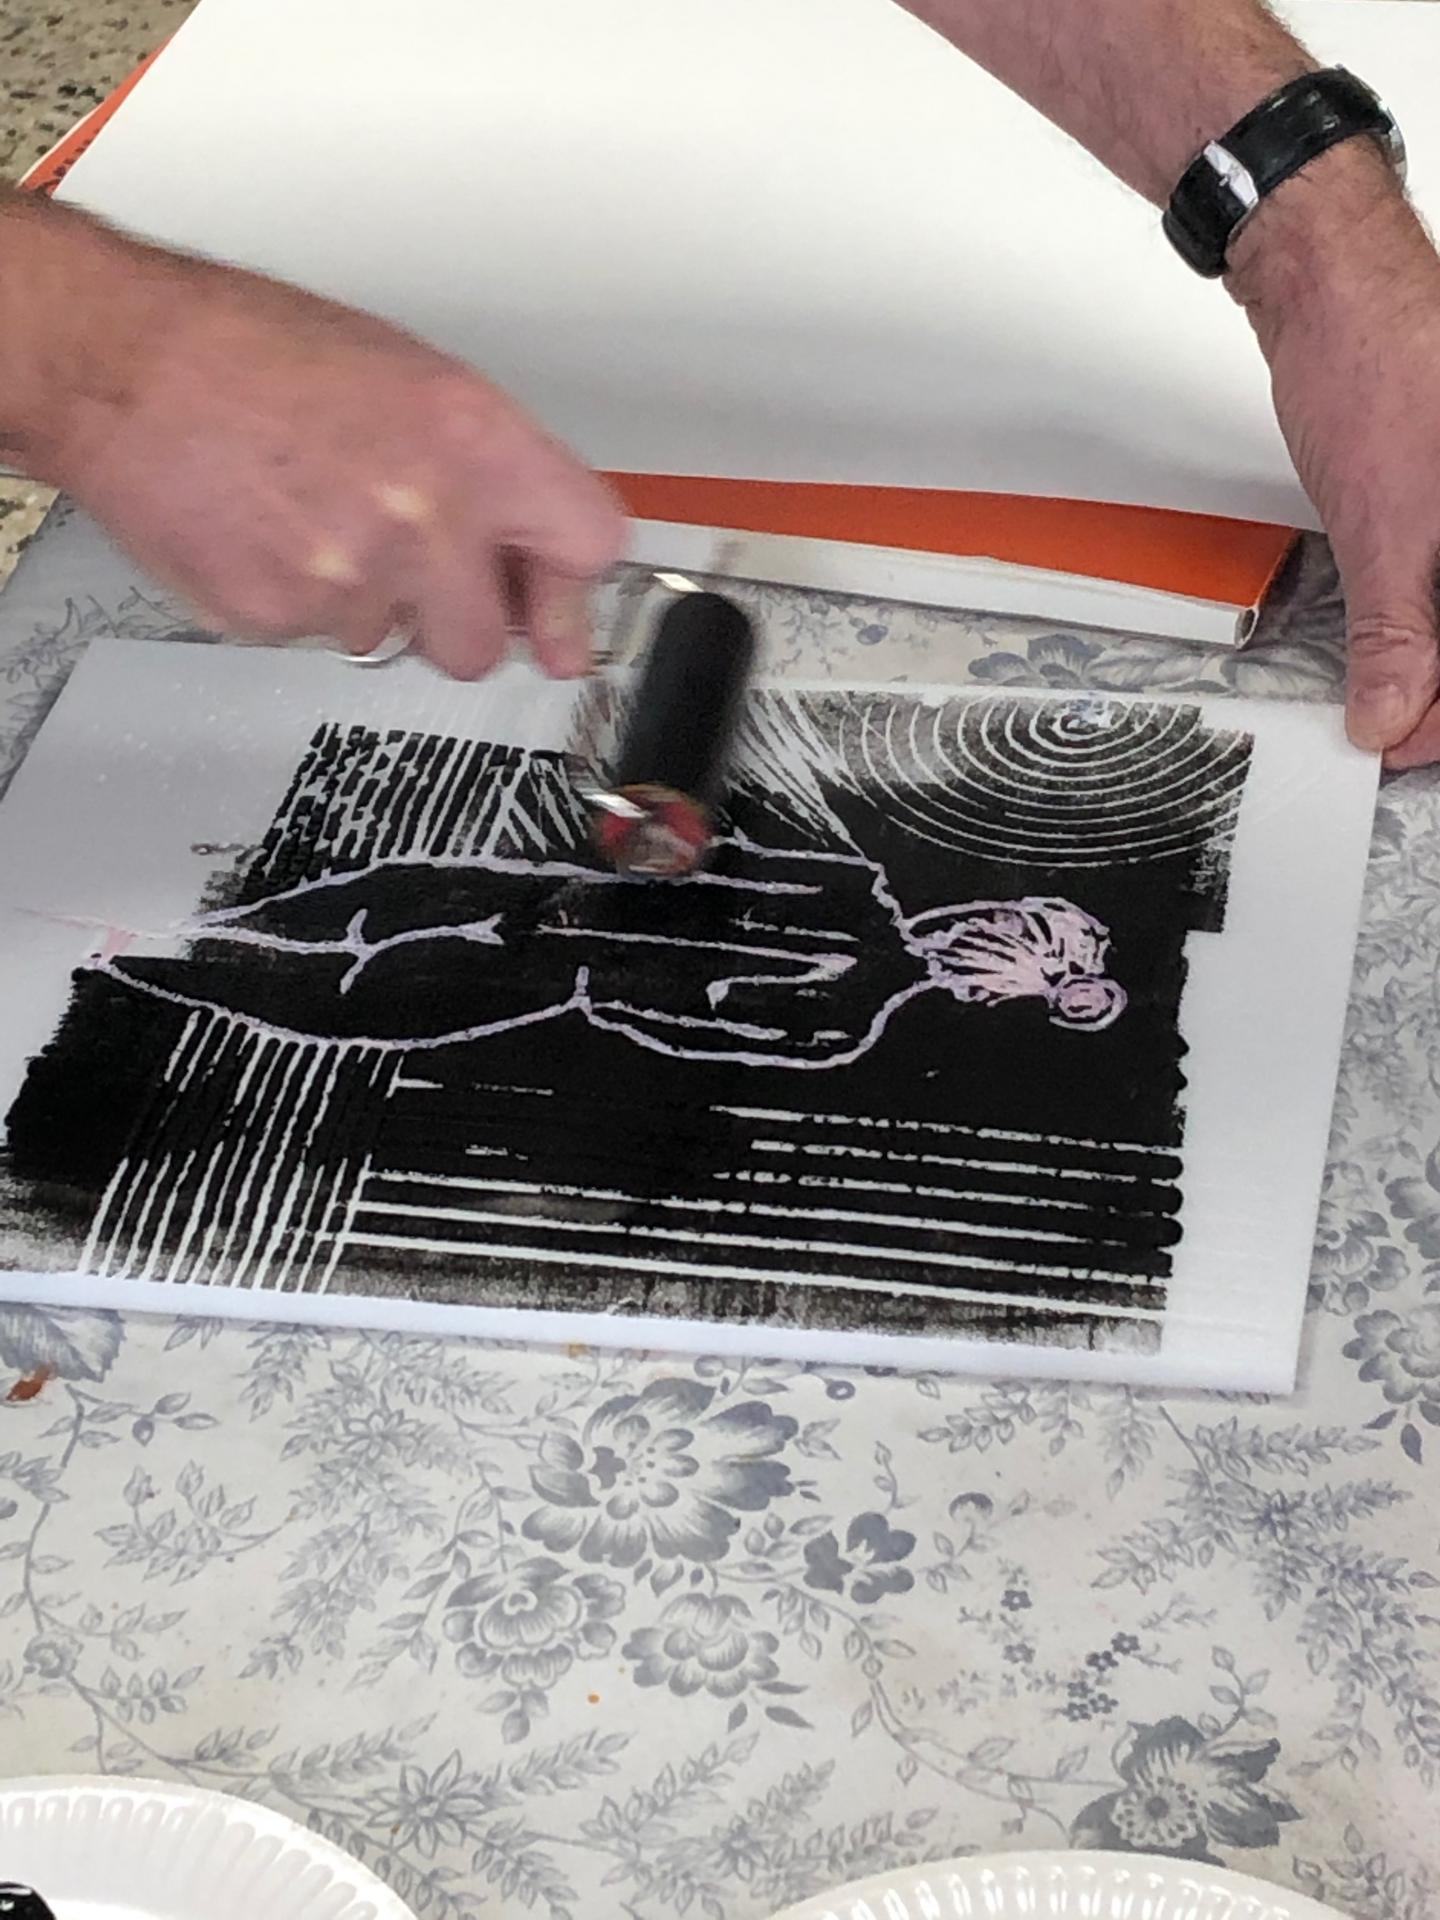 Linol Ink on Engraved Polystyrene